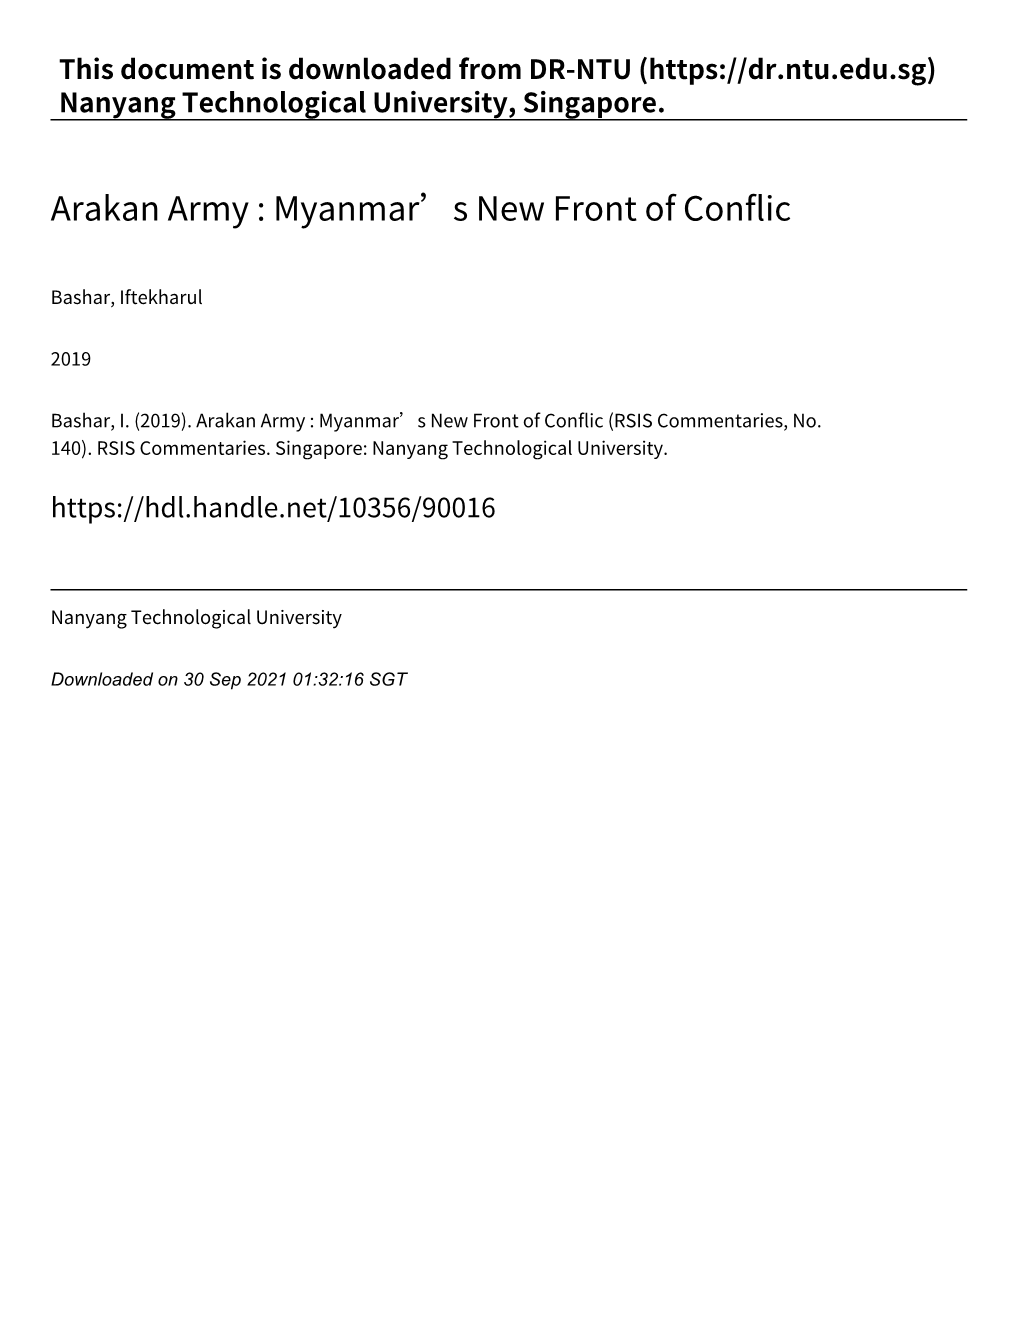 Arakan Army : Myanmar’S New Front of Conflic